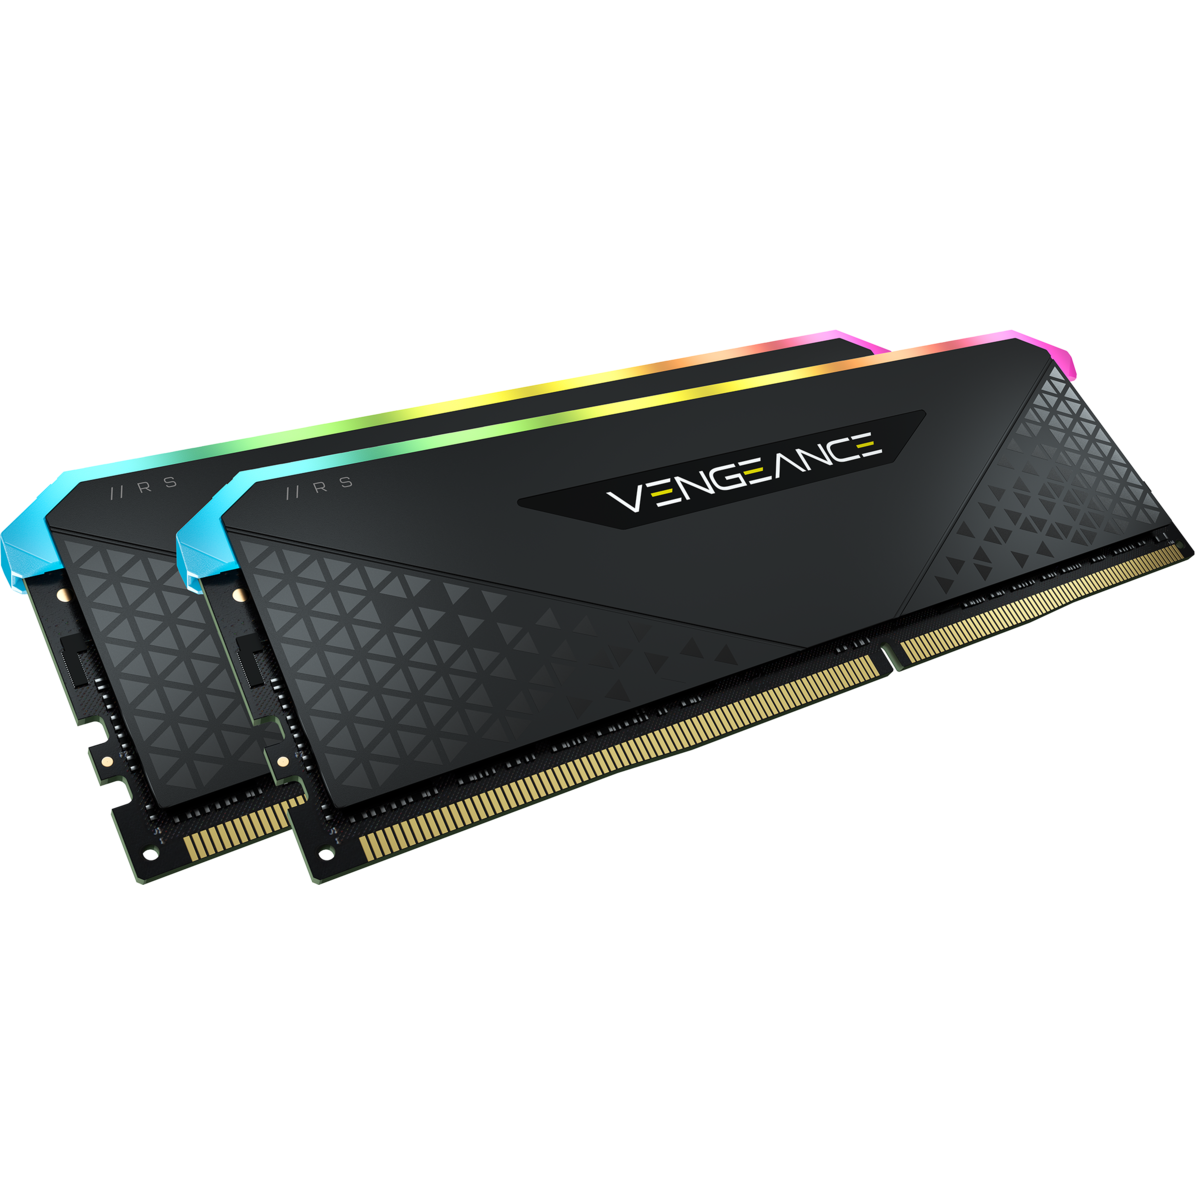 CORSAIR VENGEANCE® RGB RS 16GB (2 x 8GB) DDR4 DRAM 3600MHz C18 Memory Kit